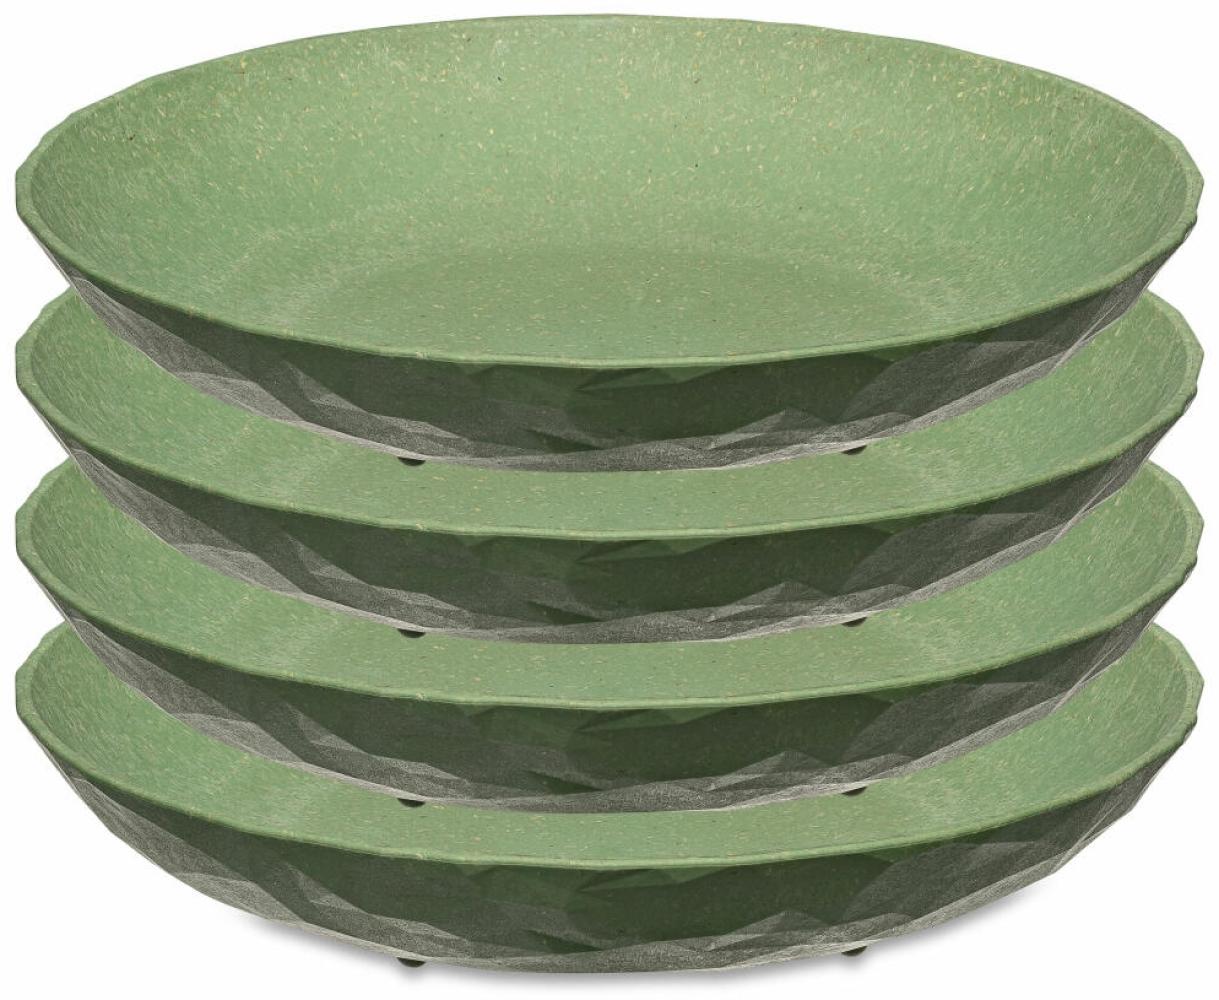 Koziol Tiefer Teller 4er-Set Club Plate, Suppenteller, Schalen, Kunststoff-Holz-Mix, Nature Leaf Green, 22 cm, 5006703 Bild 1